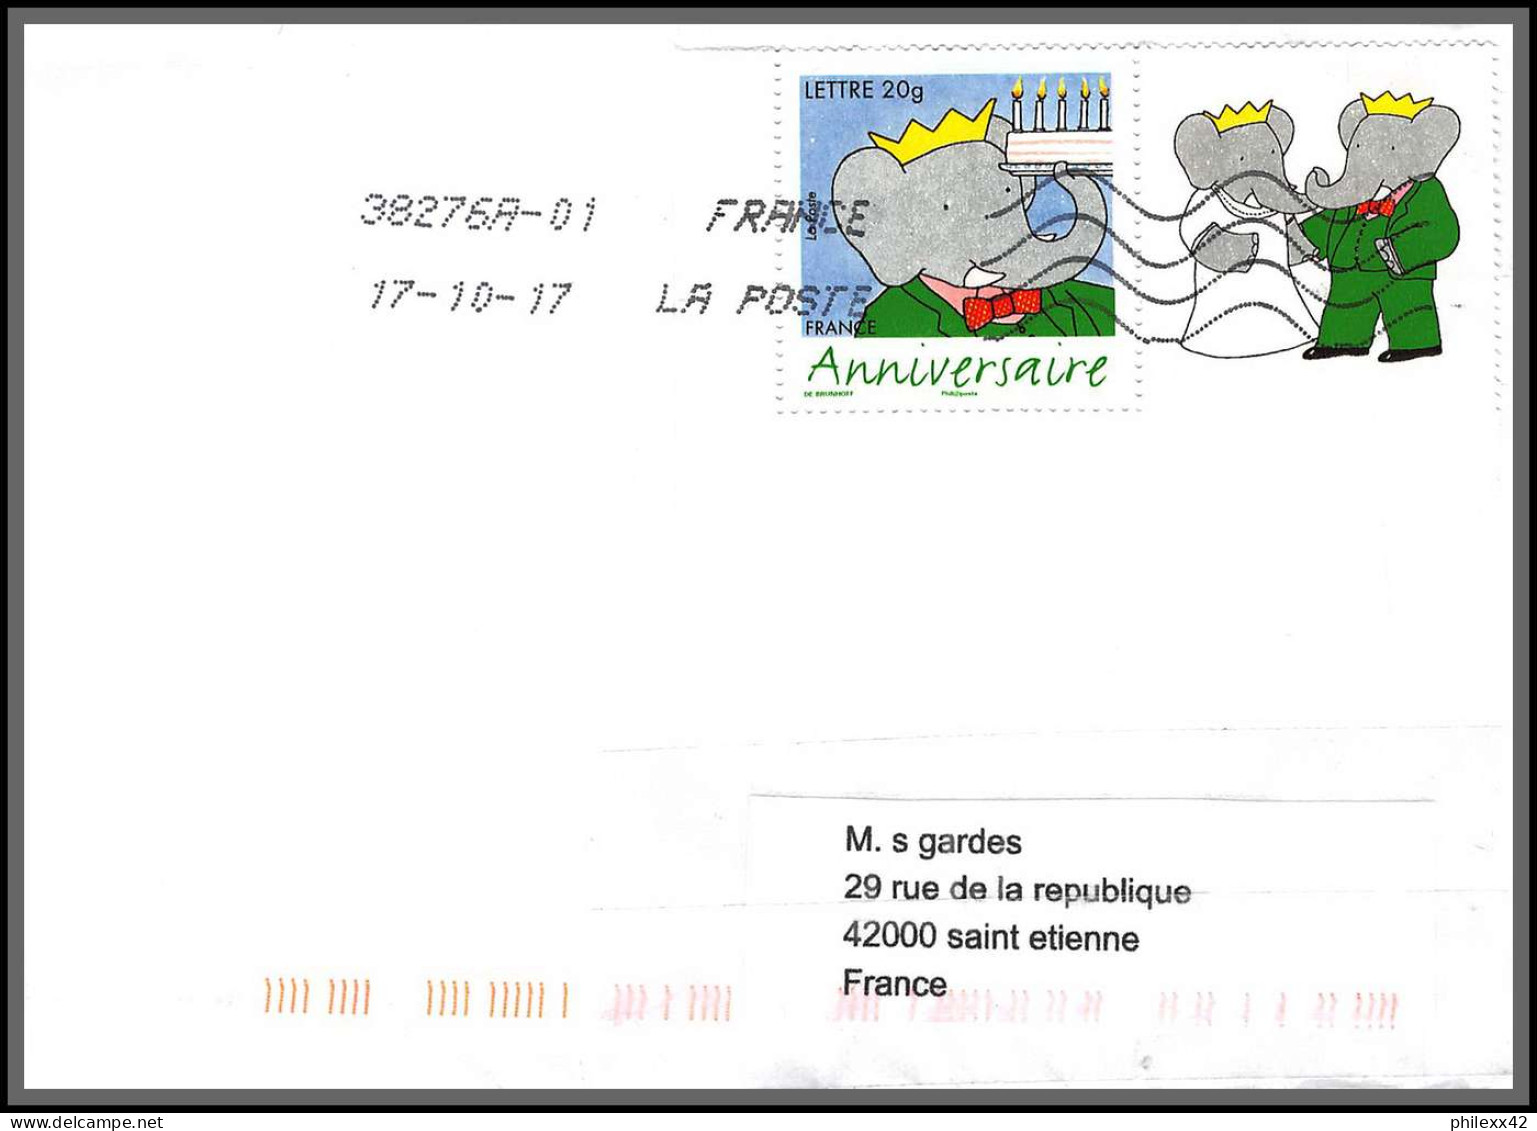 95916 - Lot De 15 Courriers Lettres Enveloppes De L'année 2017 Divers Affranchissements En EUROS - Storia Postale